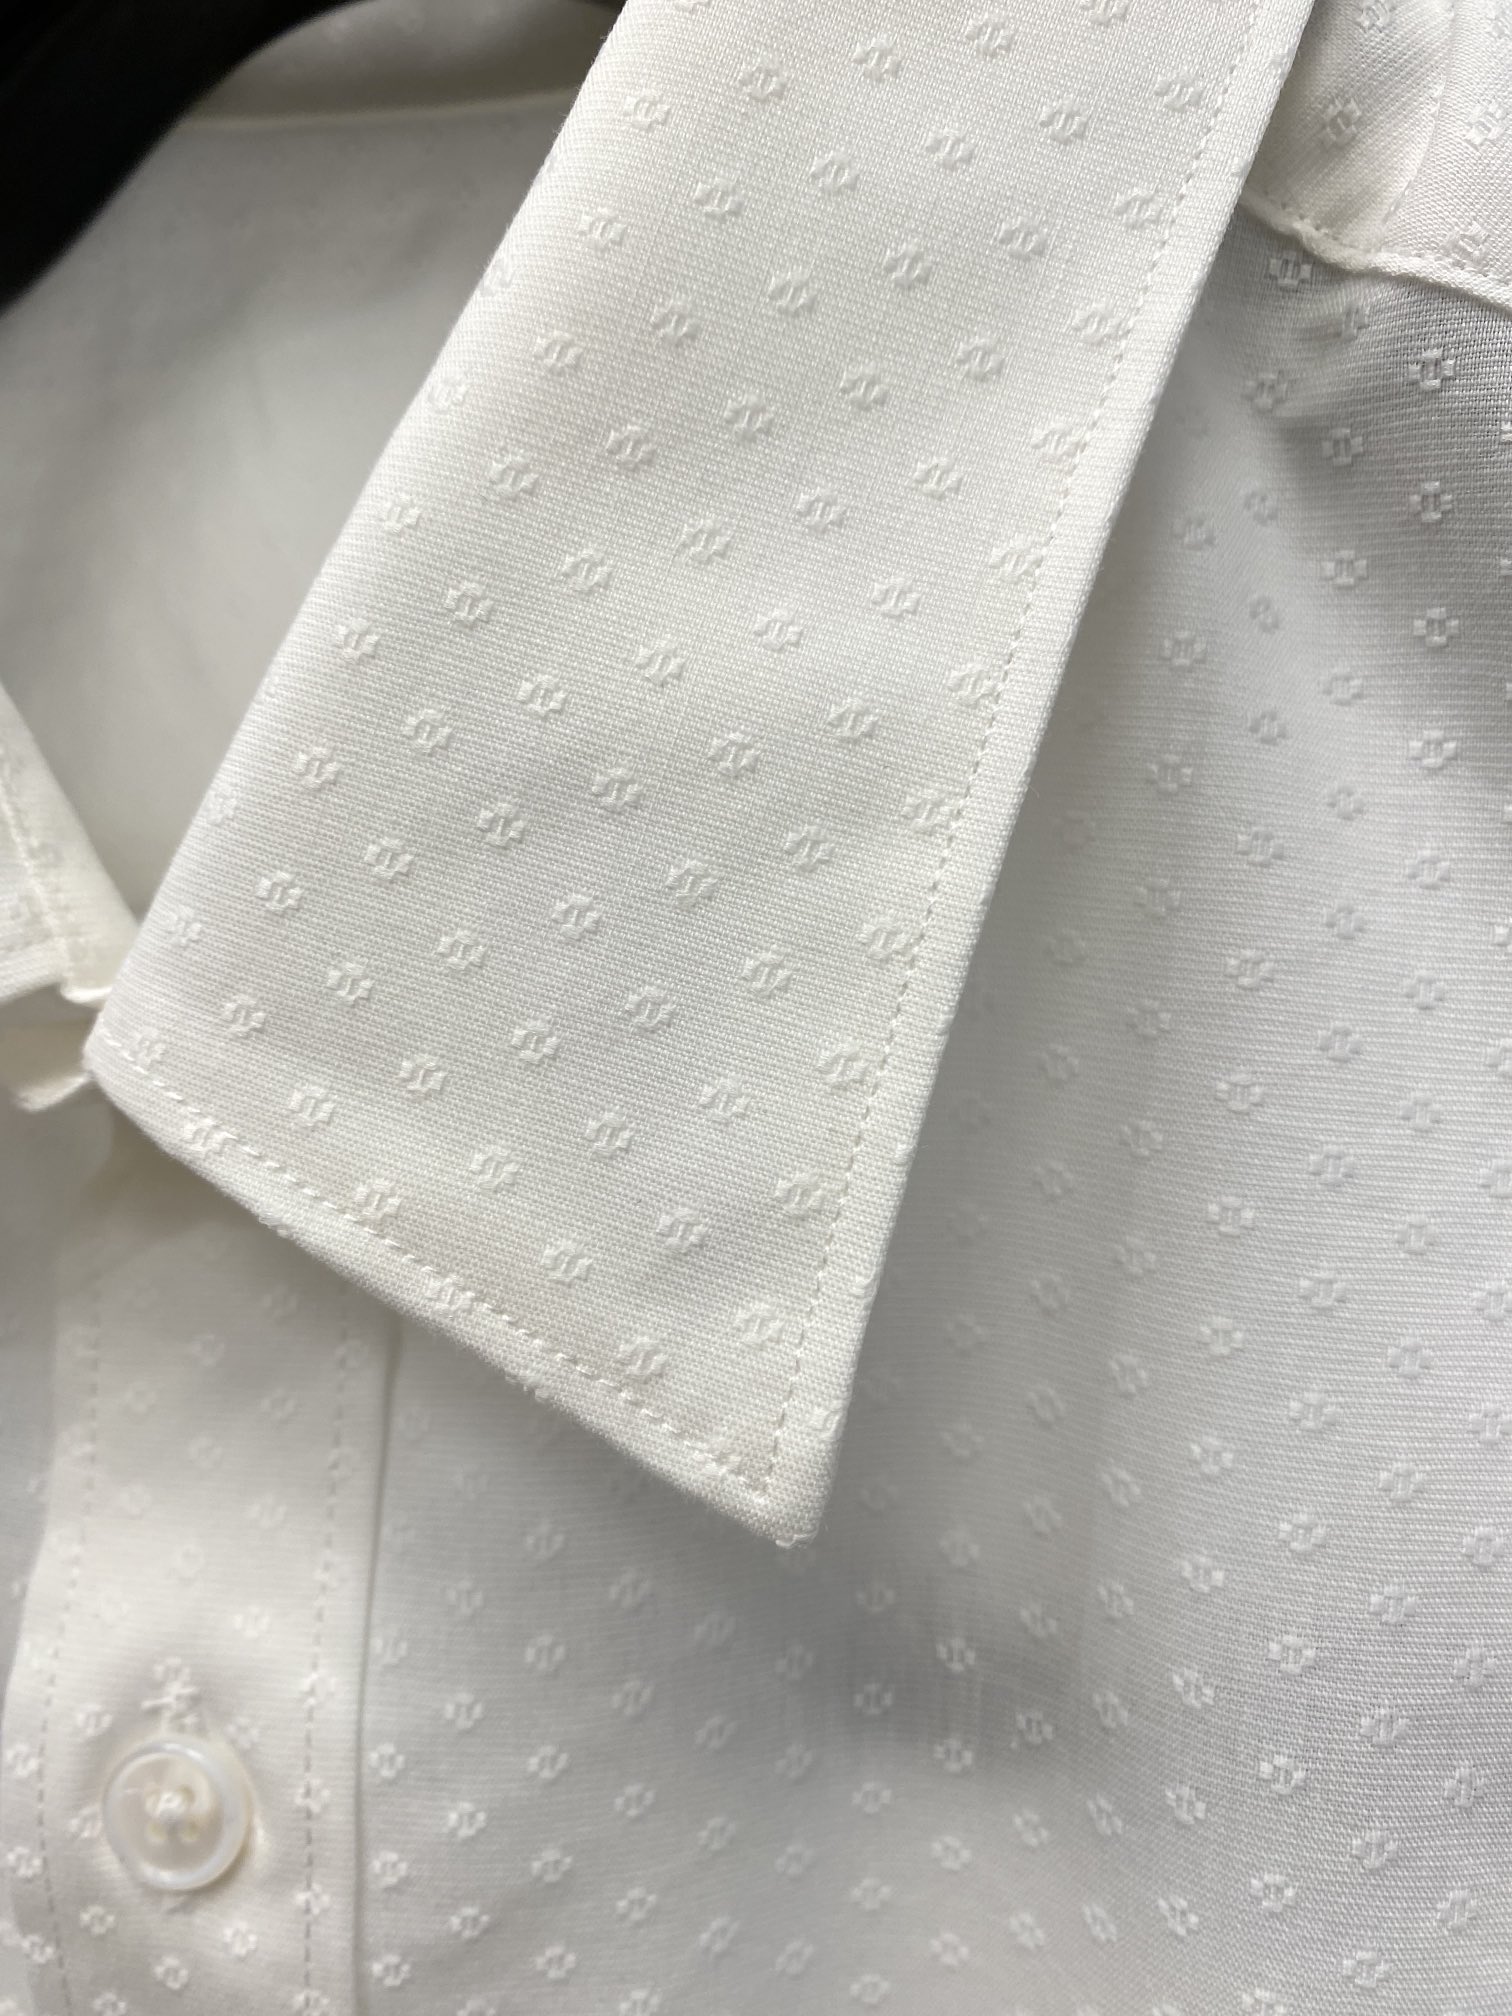 爱马仕2024新款衬衫打造时装艺术感立体剪裁修身版型上身效果很帅气微彰显品位整体细节可以对比效果非常有型